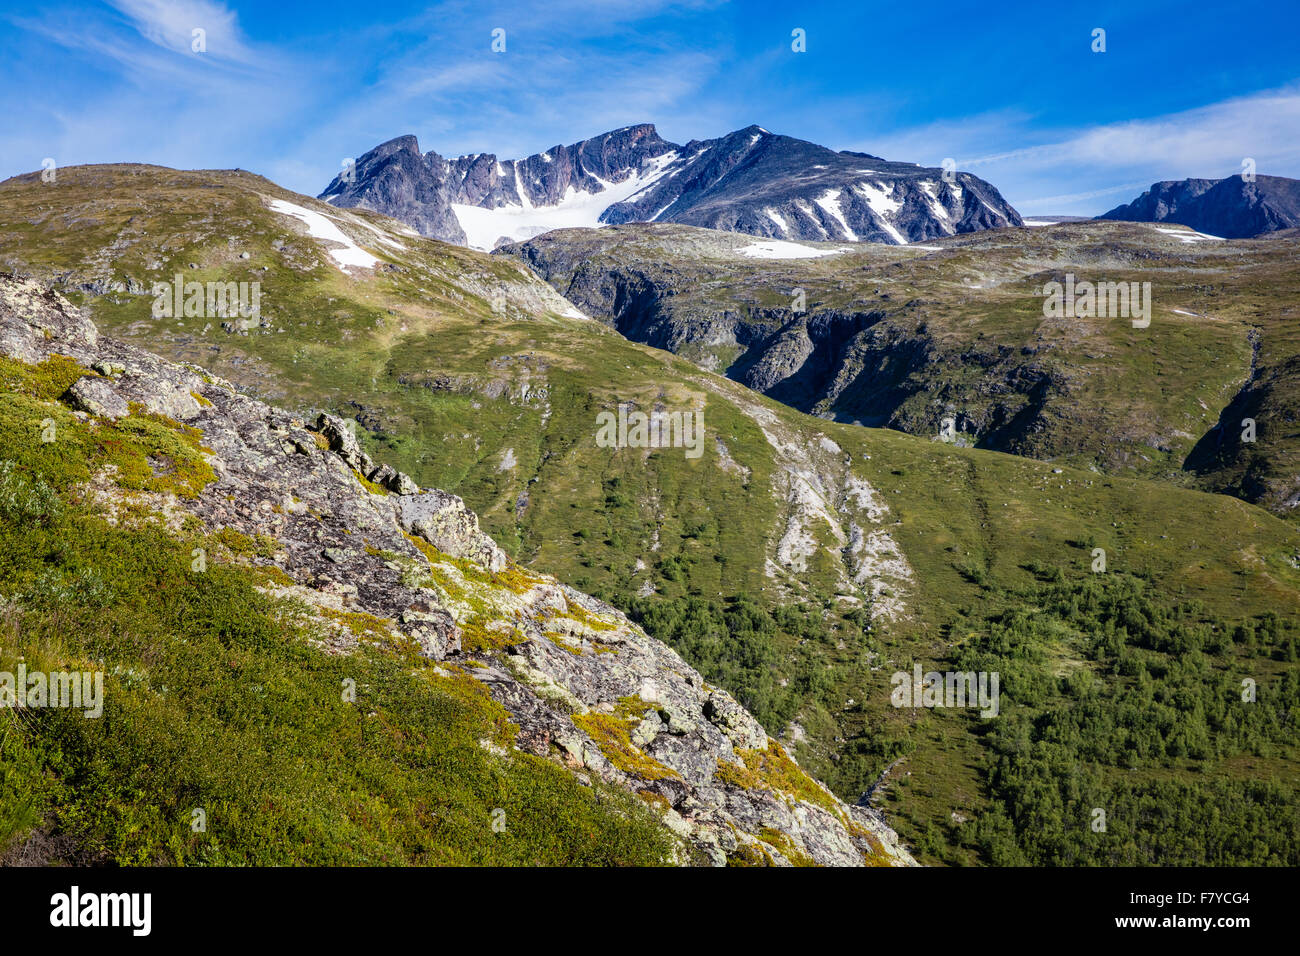 Sertningssue Mountain à partir de la vallée de la rivière Muru Memurubu près de dans le parc national de Jotunheimen Norvège Banque D'Images